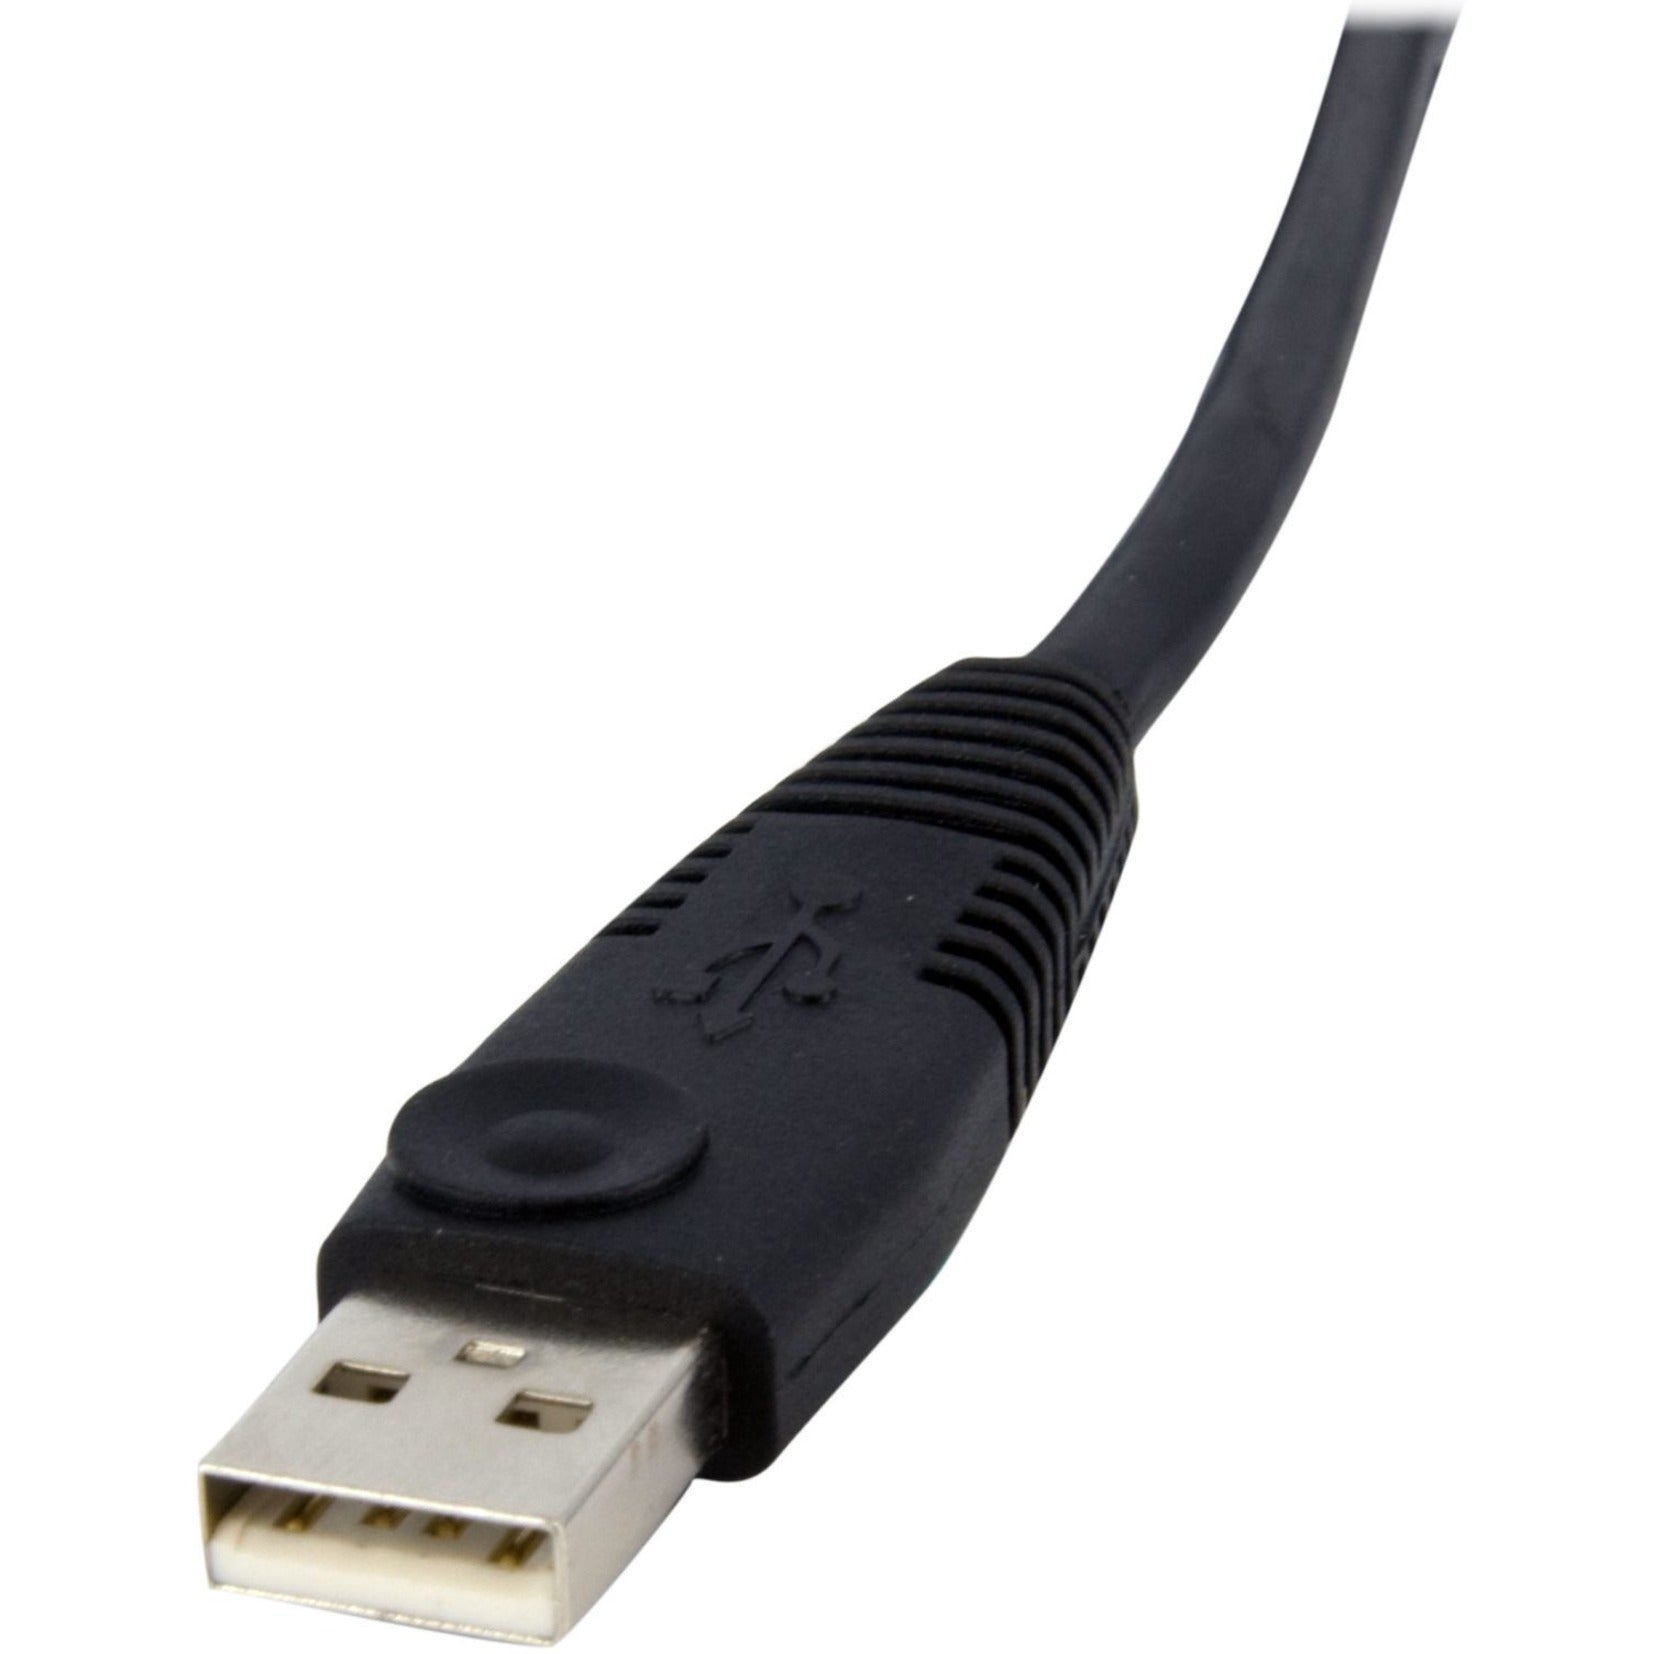 StarTech.comのDVID4N1USB6 6ft 4-in-1 USBデュアルリンクDVI-D KVMスイッチケーブル withオーディオ＆マイクロホン、銅導体、7.9 Gbit/sデータ転送速度 Discontinued